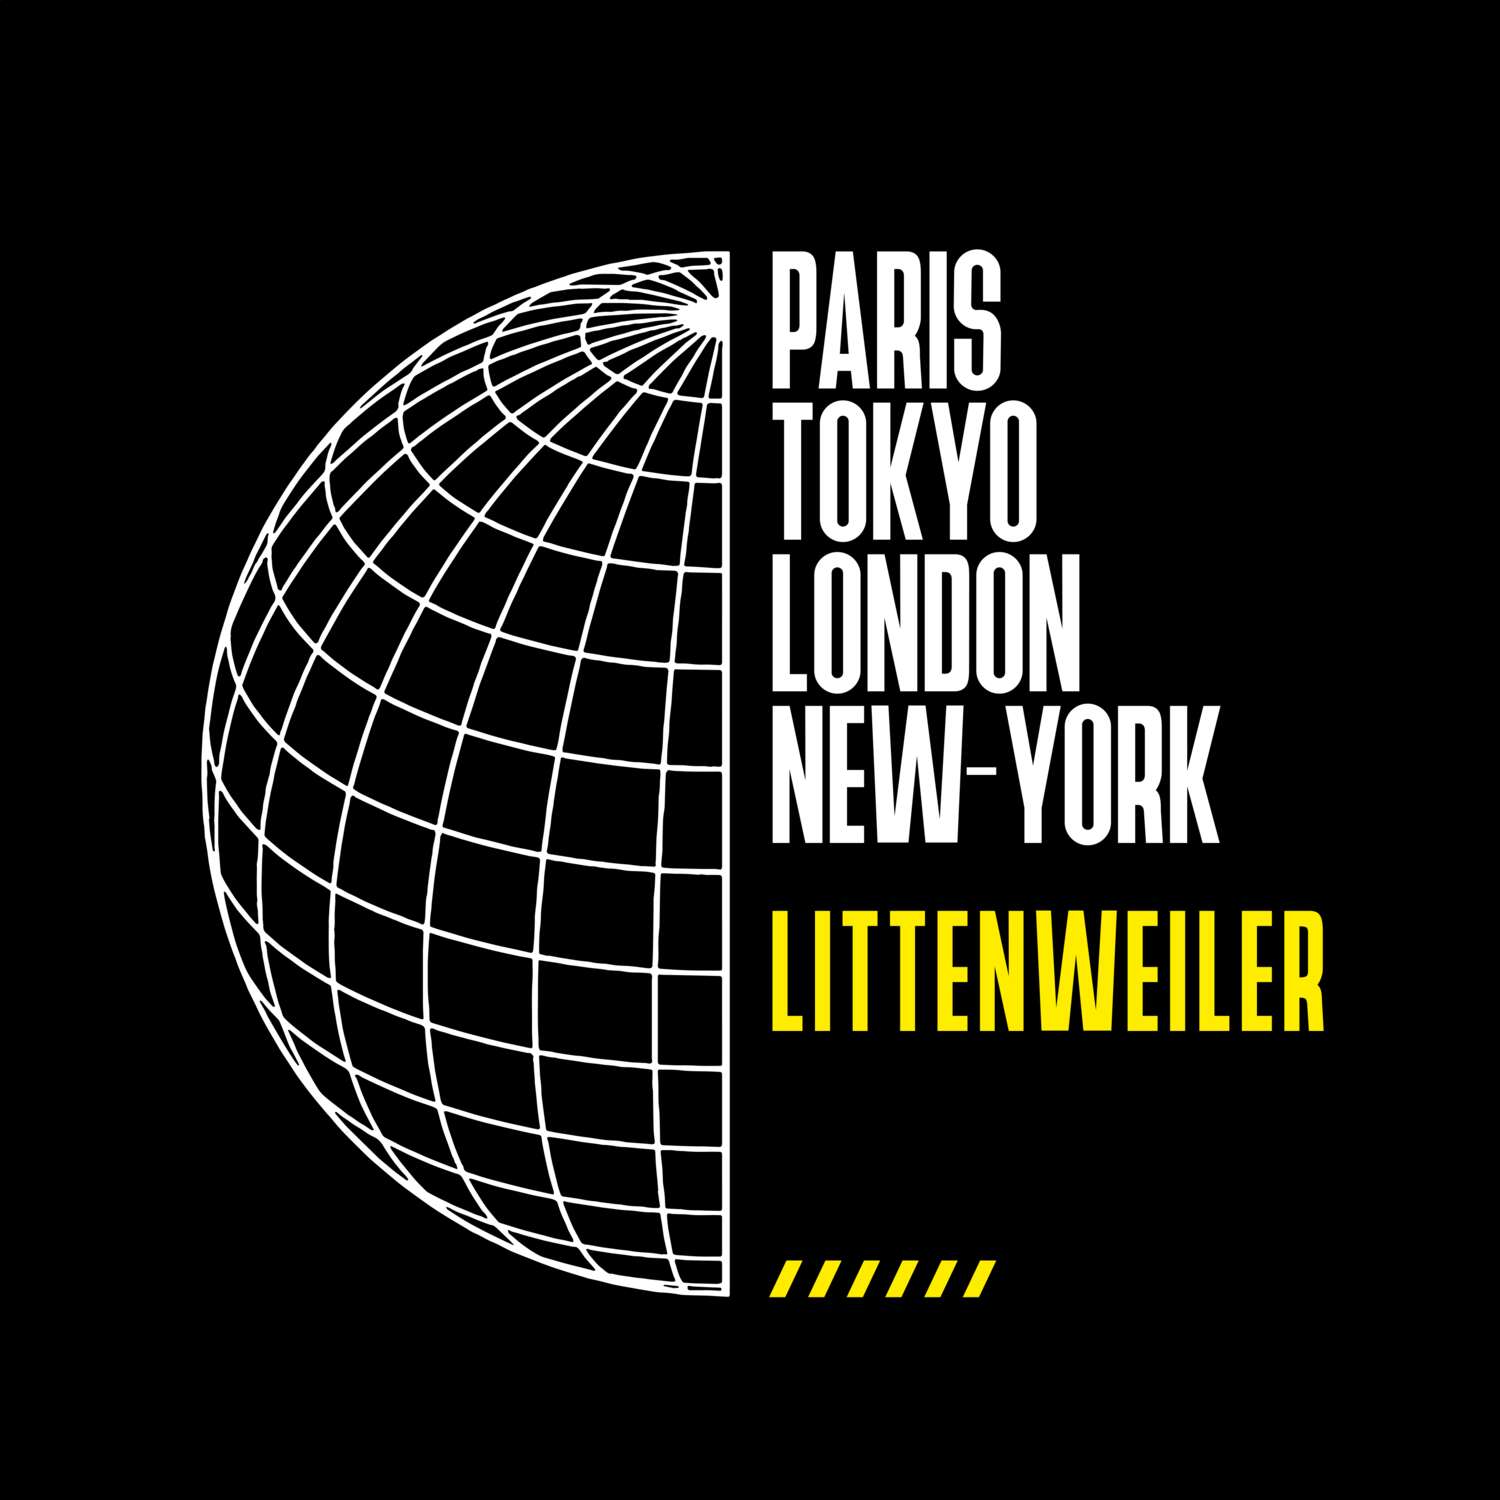 Littenweiler T-Shirt »Paris Tokyo London«